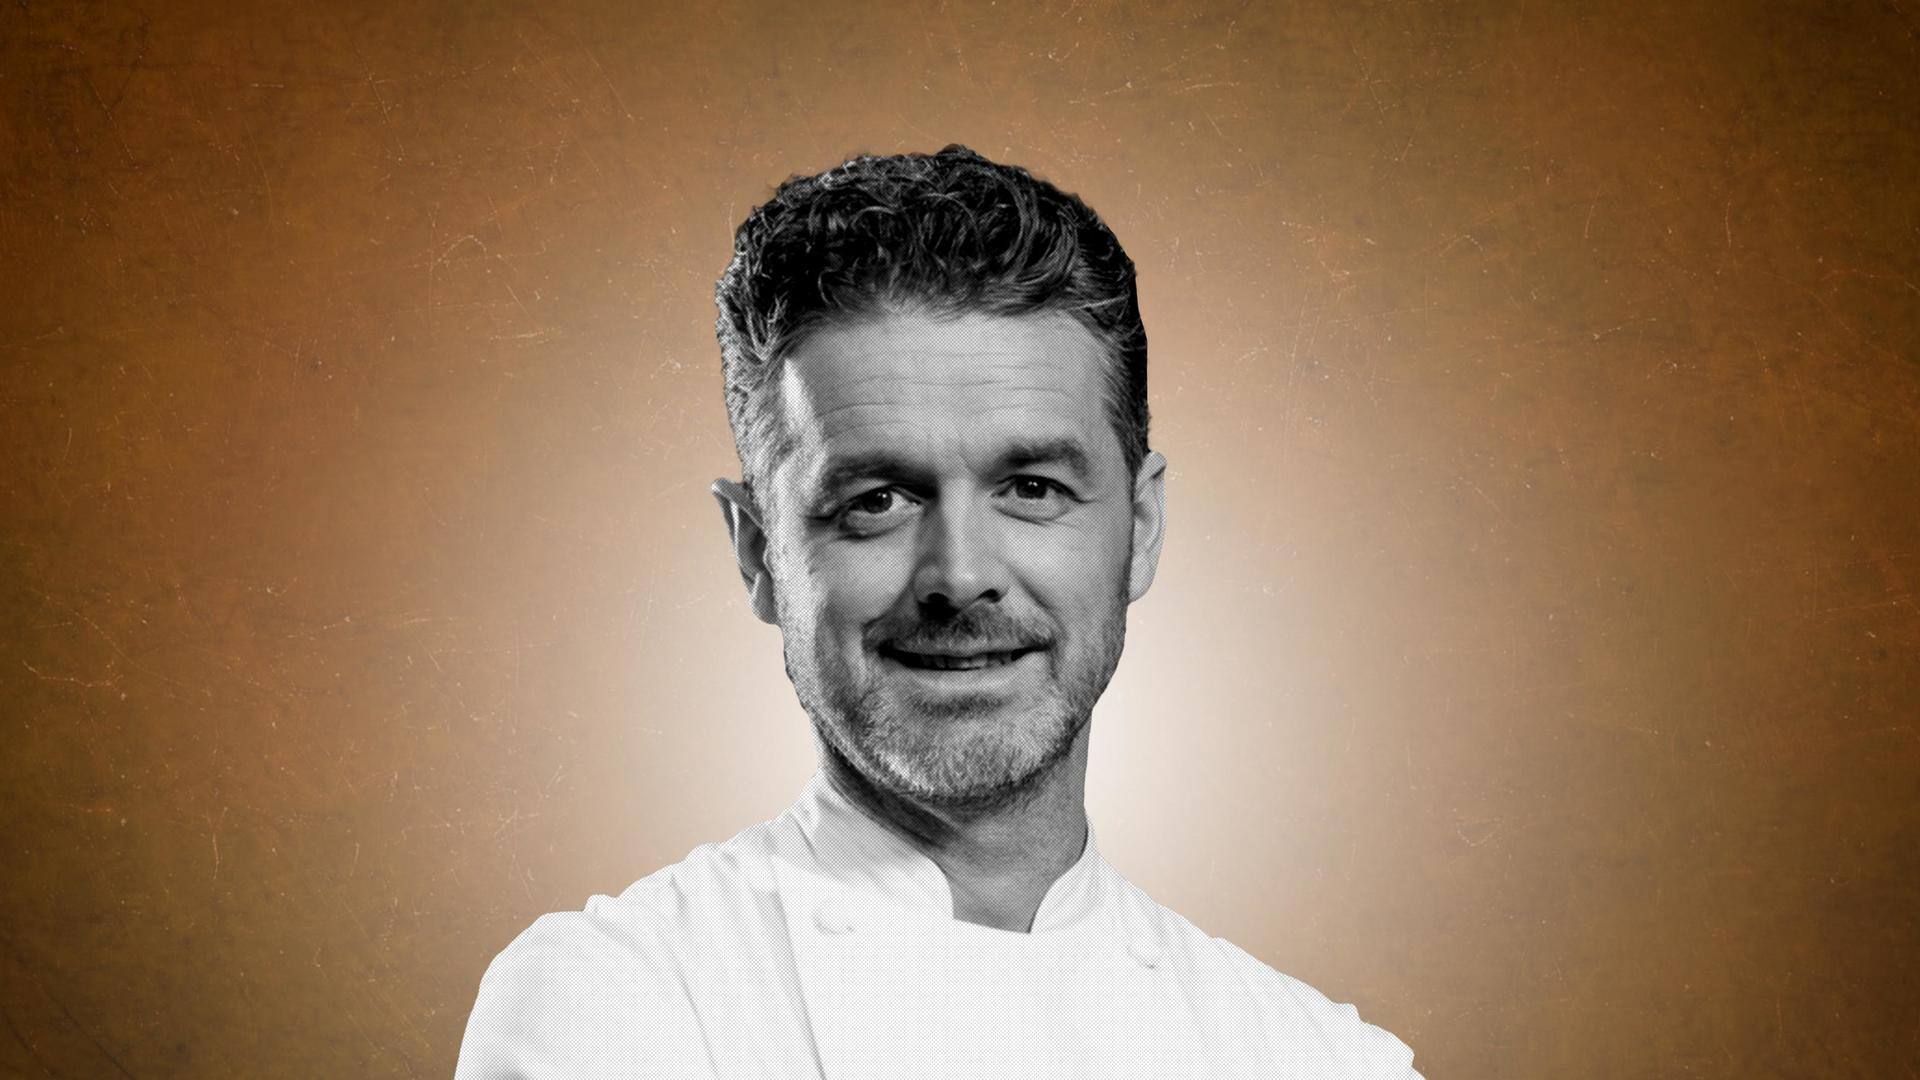 Celebrated chef Jock Zonfrillo dies before MasterChef Australia season premiere